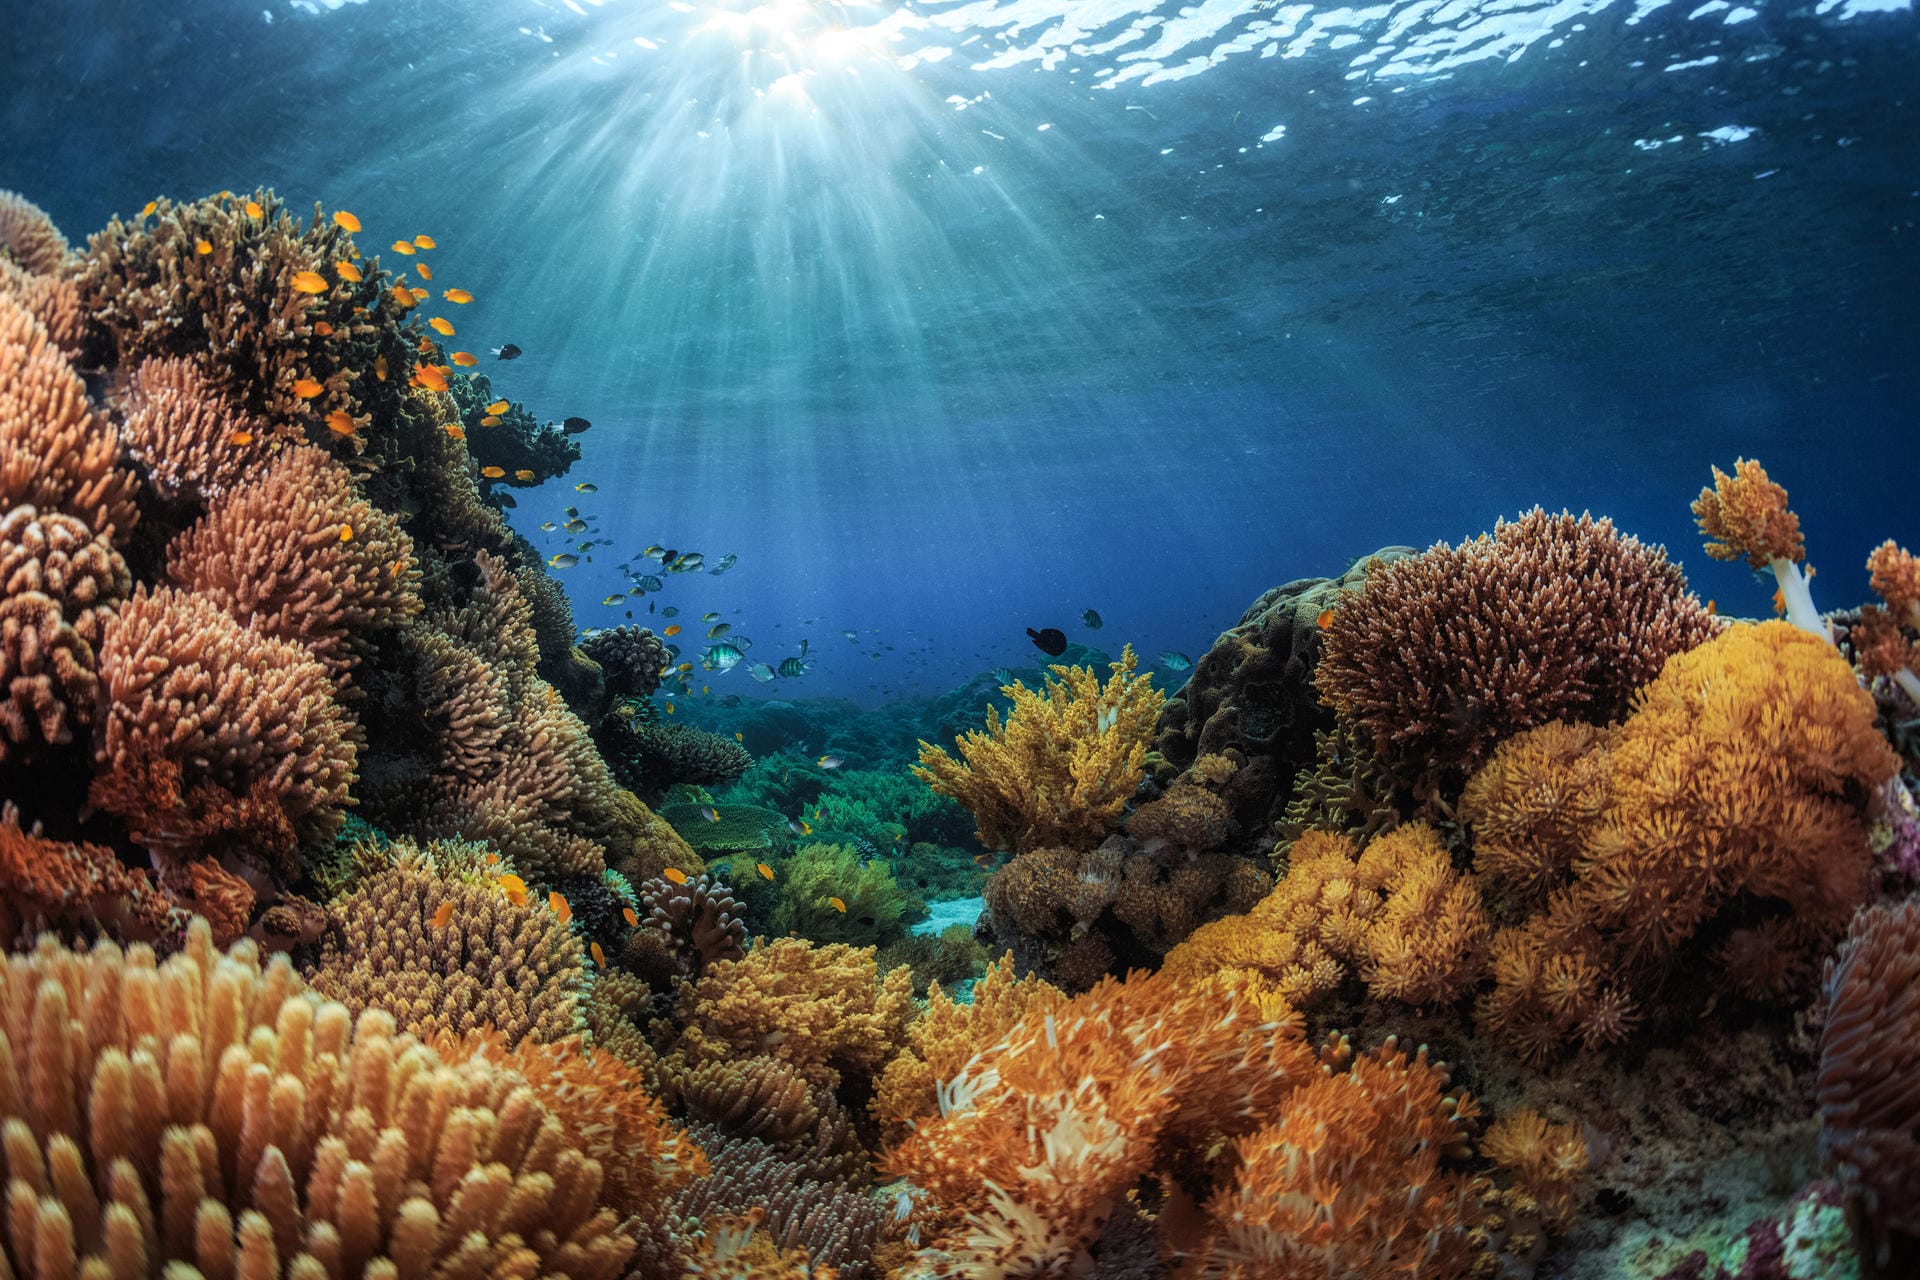 Korallen als Mitbringsel waren vor vielen Jahren noch kein Problem. Heute dürfen Sie die geschützten Arten weder selbst sammeln noch sollten Sie diese kaufen.